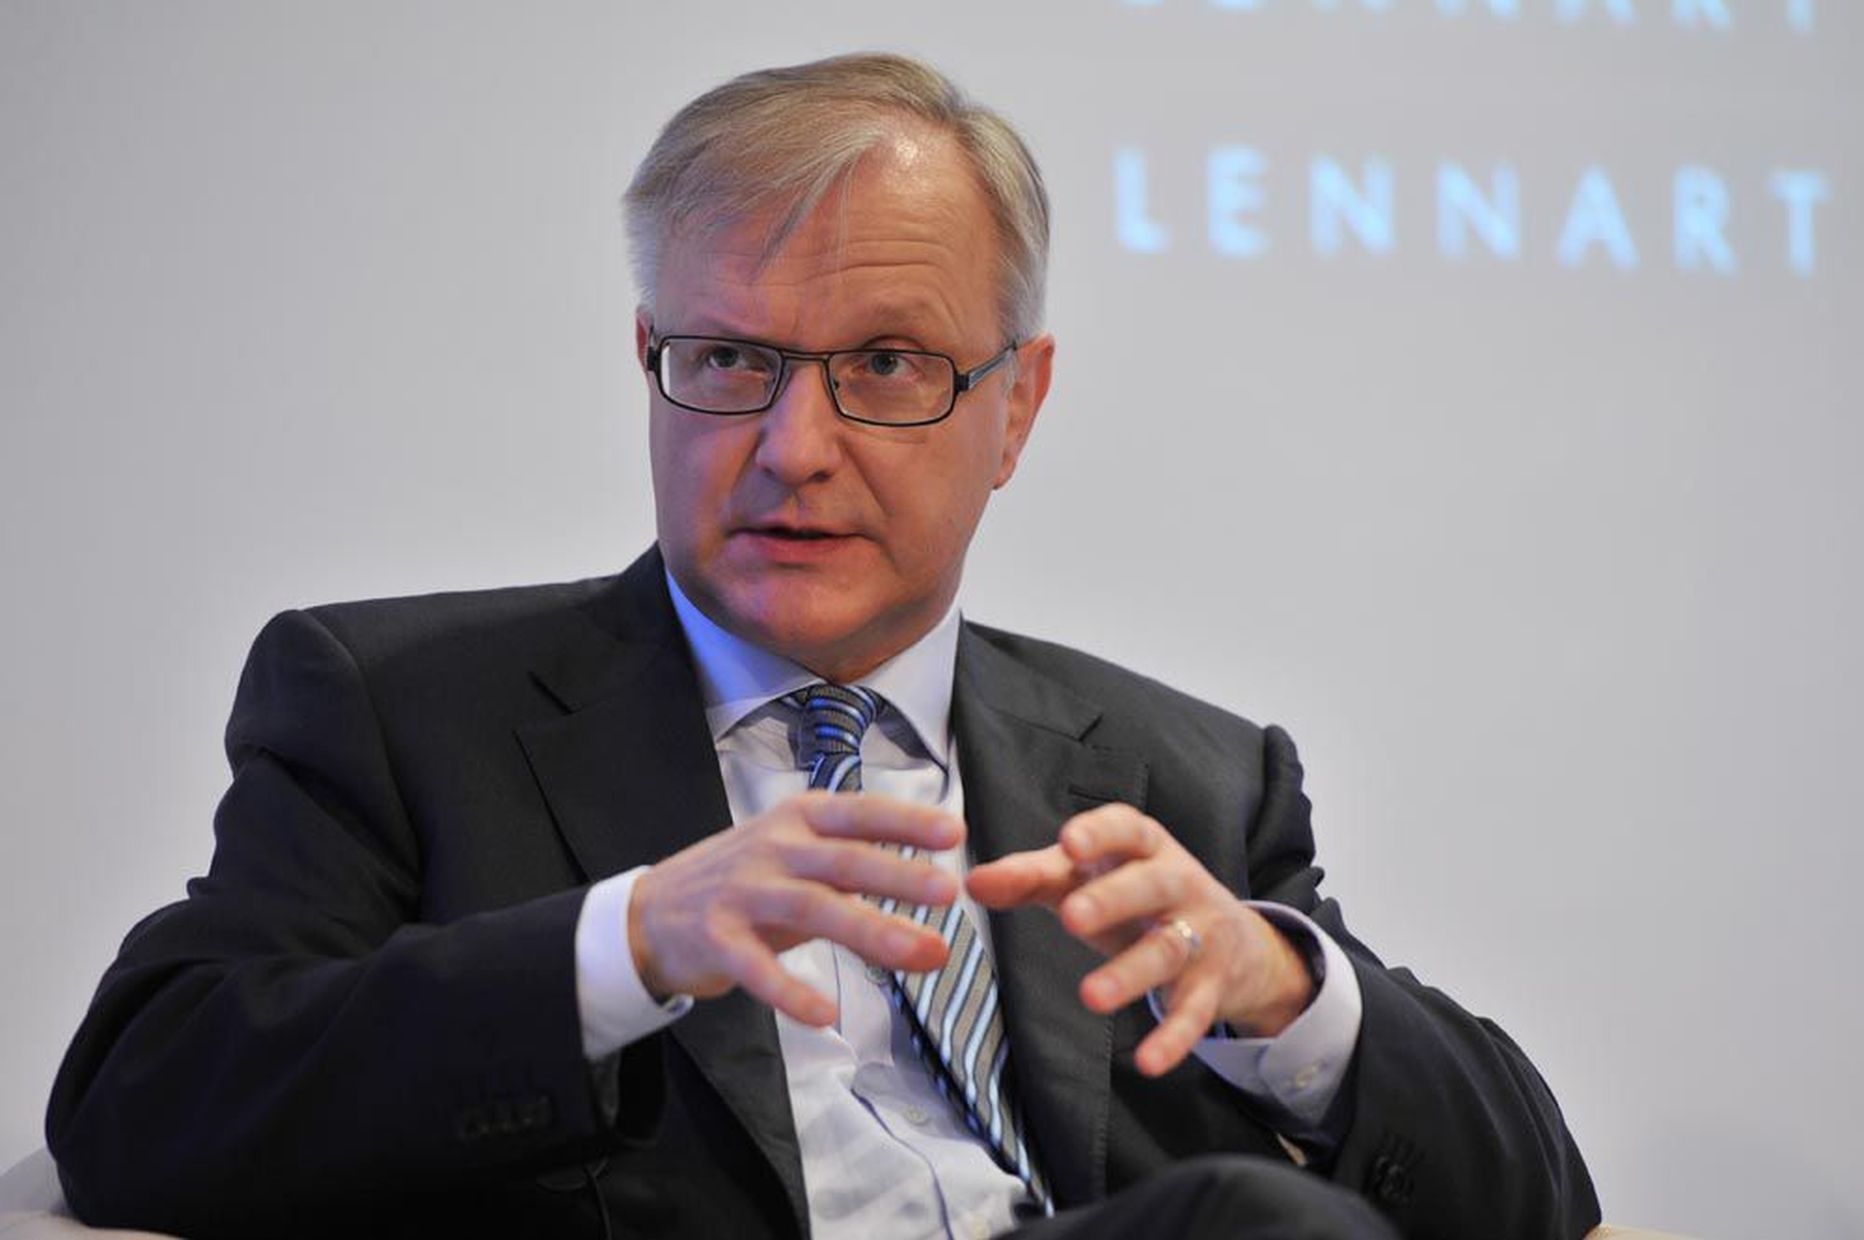 Euroopa Komisjoni asepresident Olli Rehn ütles Tallinnas esinedes, et võlgu elamine ei ole Euroopa lõunaosa möödapääsmatu eripära. Näiteks tõi ta 1980. aastad, kui Euroopa murelaps oli Taani.